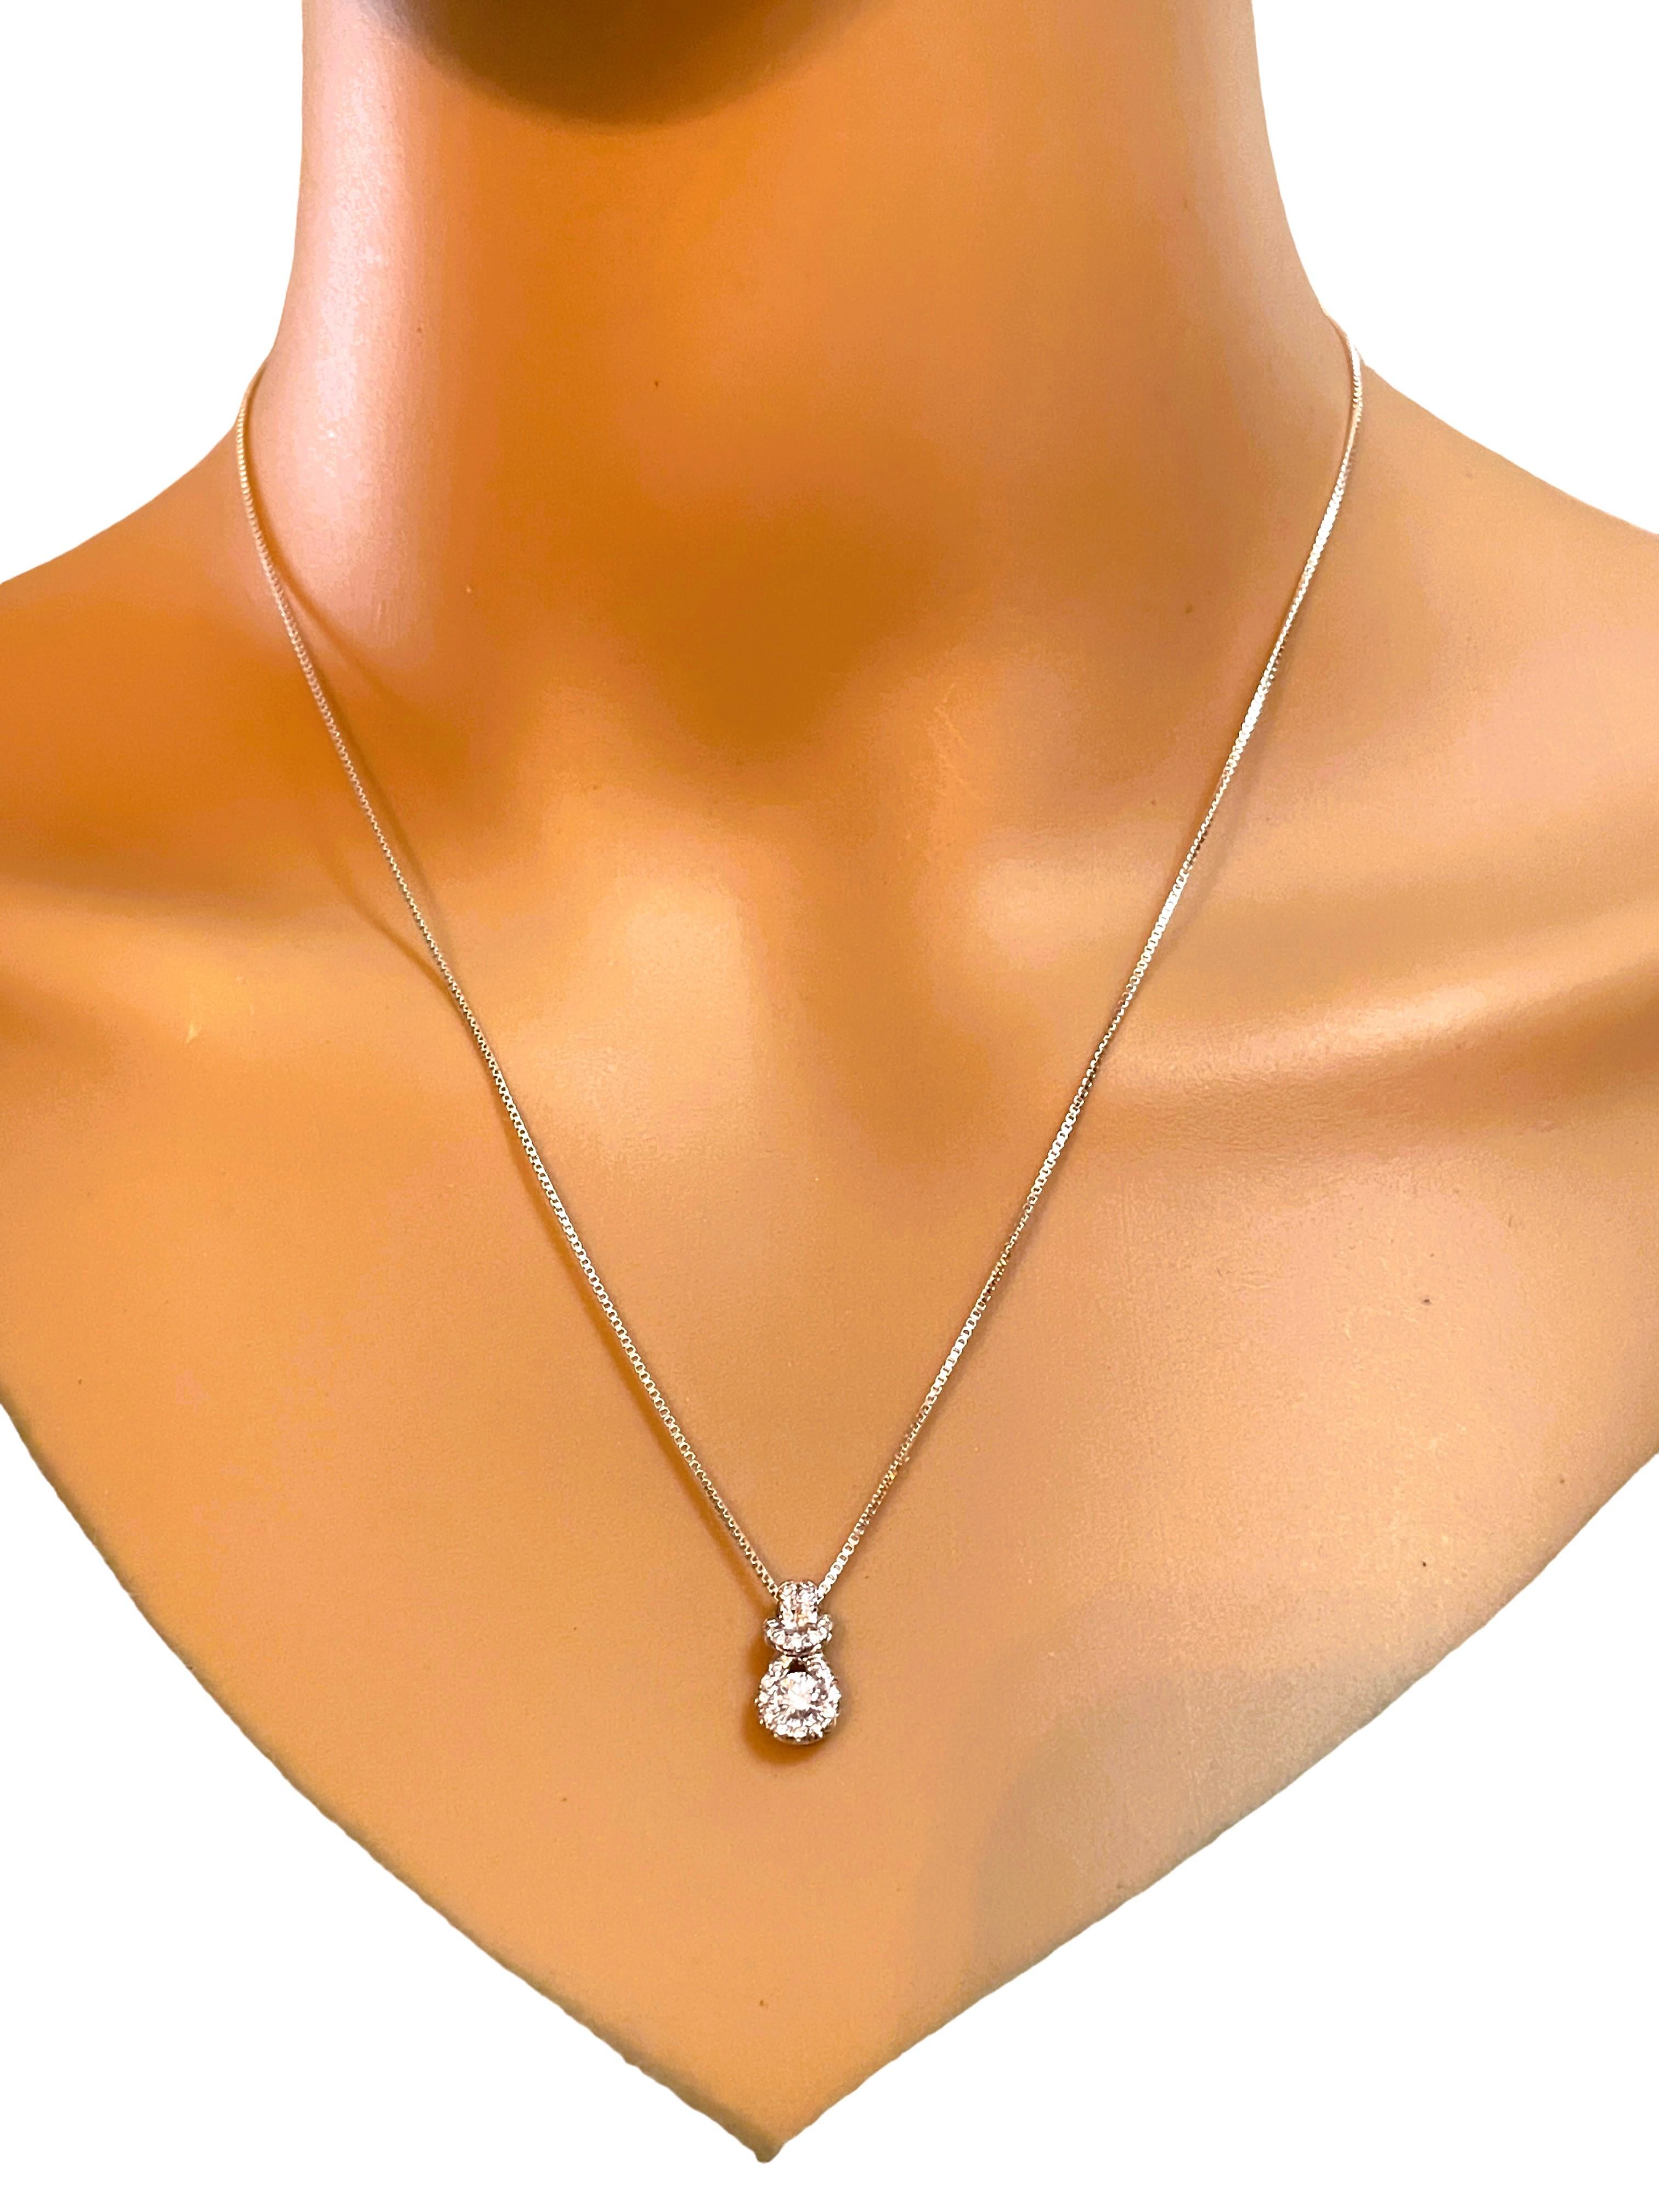 .5 carat diamond necklace